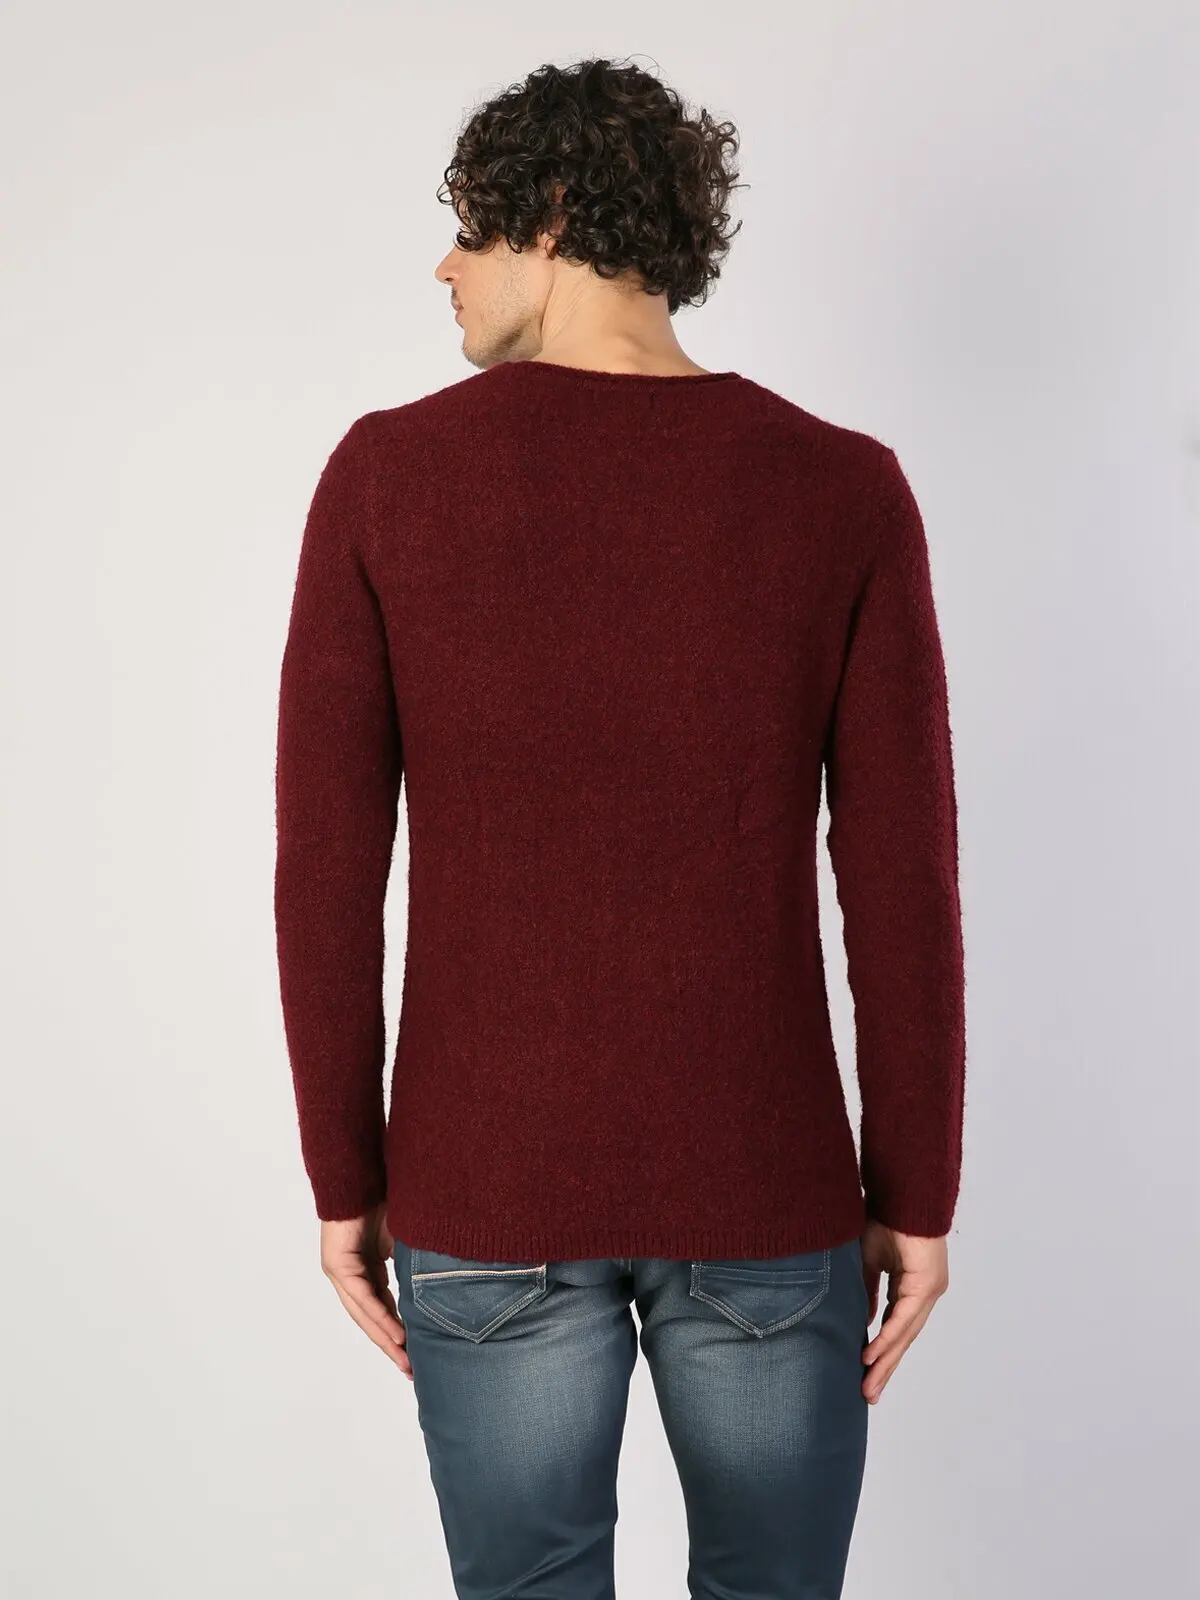 Colins Moških Redno Fit Burgundija Puloverji Moški pulover modni pulover vrhnja oblačila,CL1036196